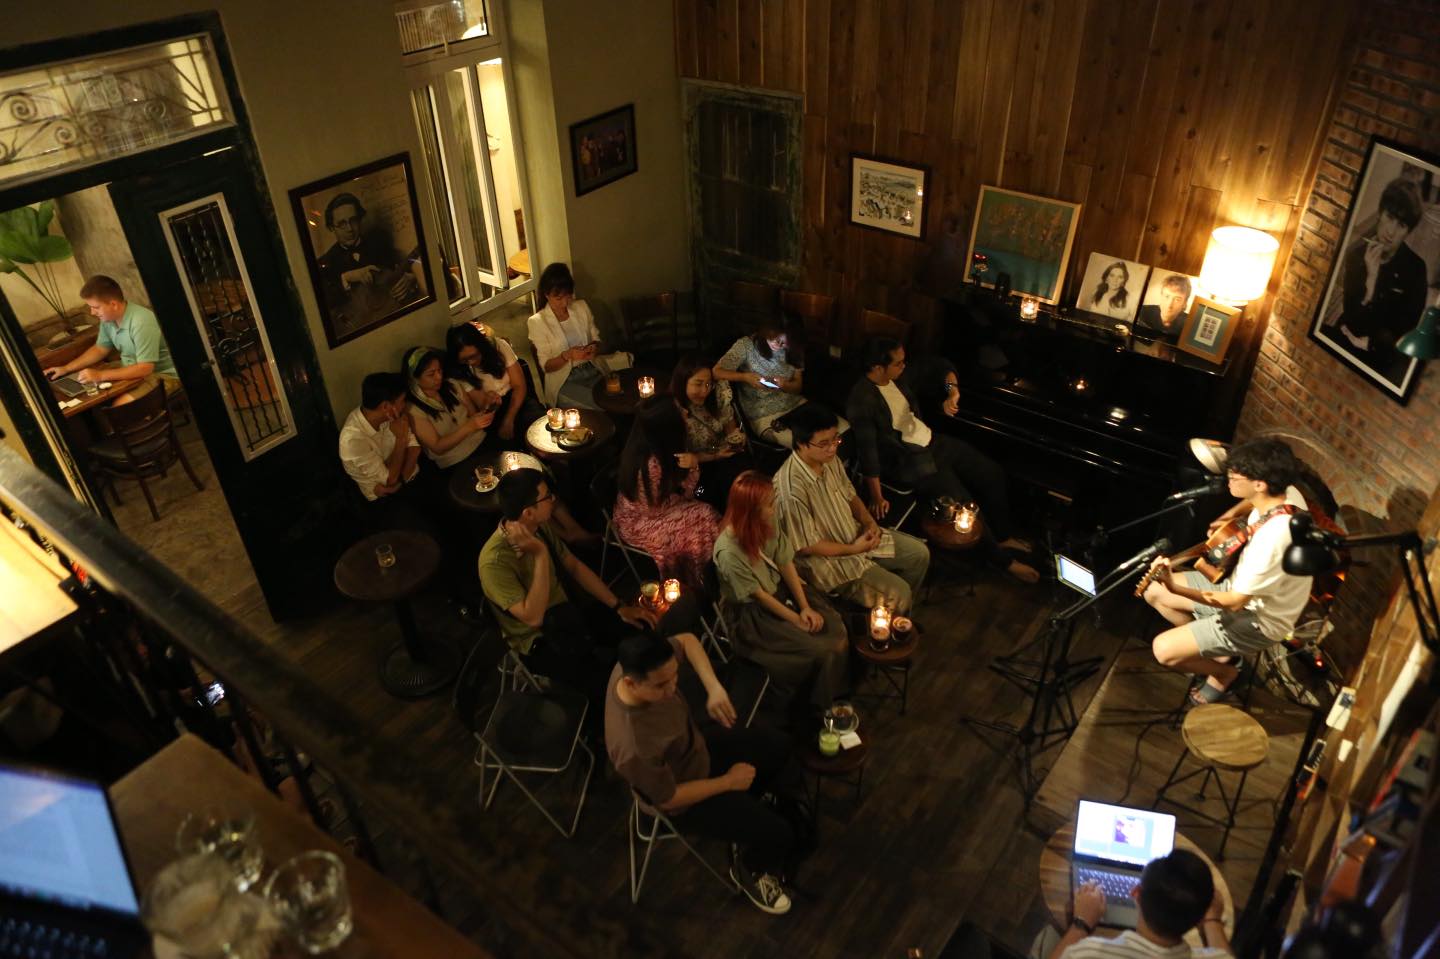 Tranquil Books & Coffee – một trong mỗi quán Cafe’ Sách giành được sự quan hoài và yêu thương quí nhất ở Hà Nội Thủ Đô lúc này. Ảnh: Sưu tầm.